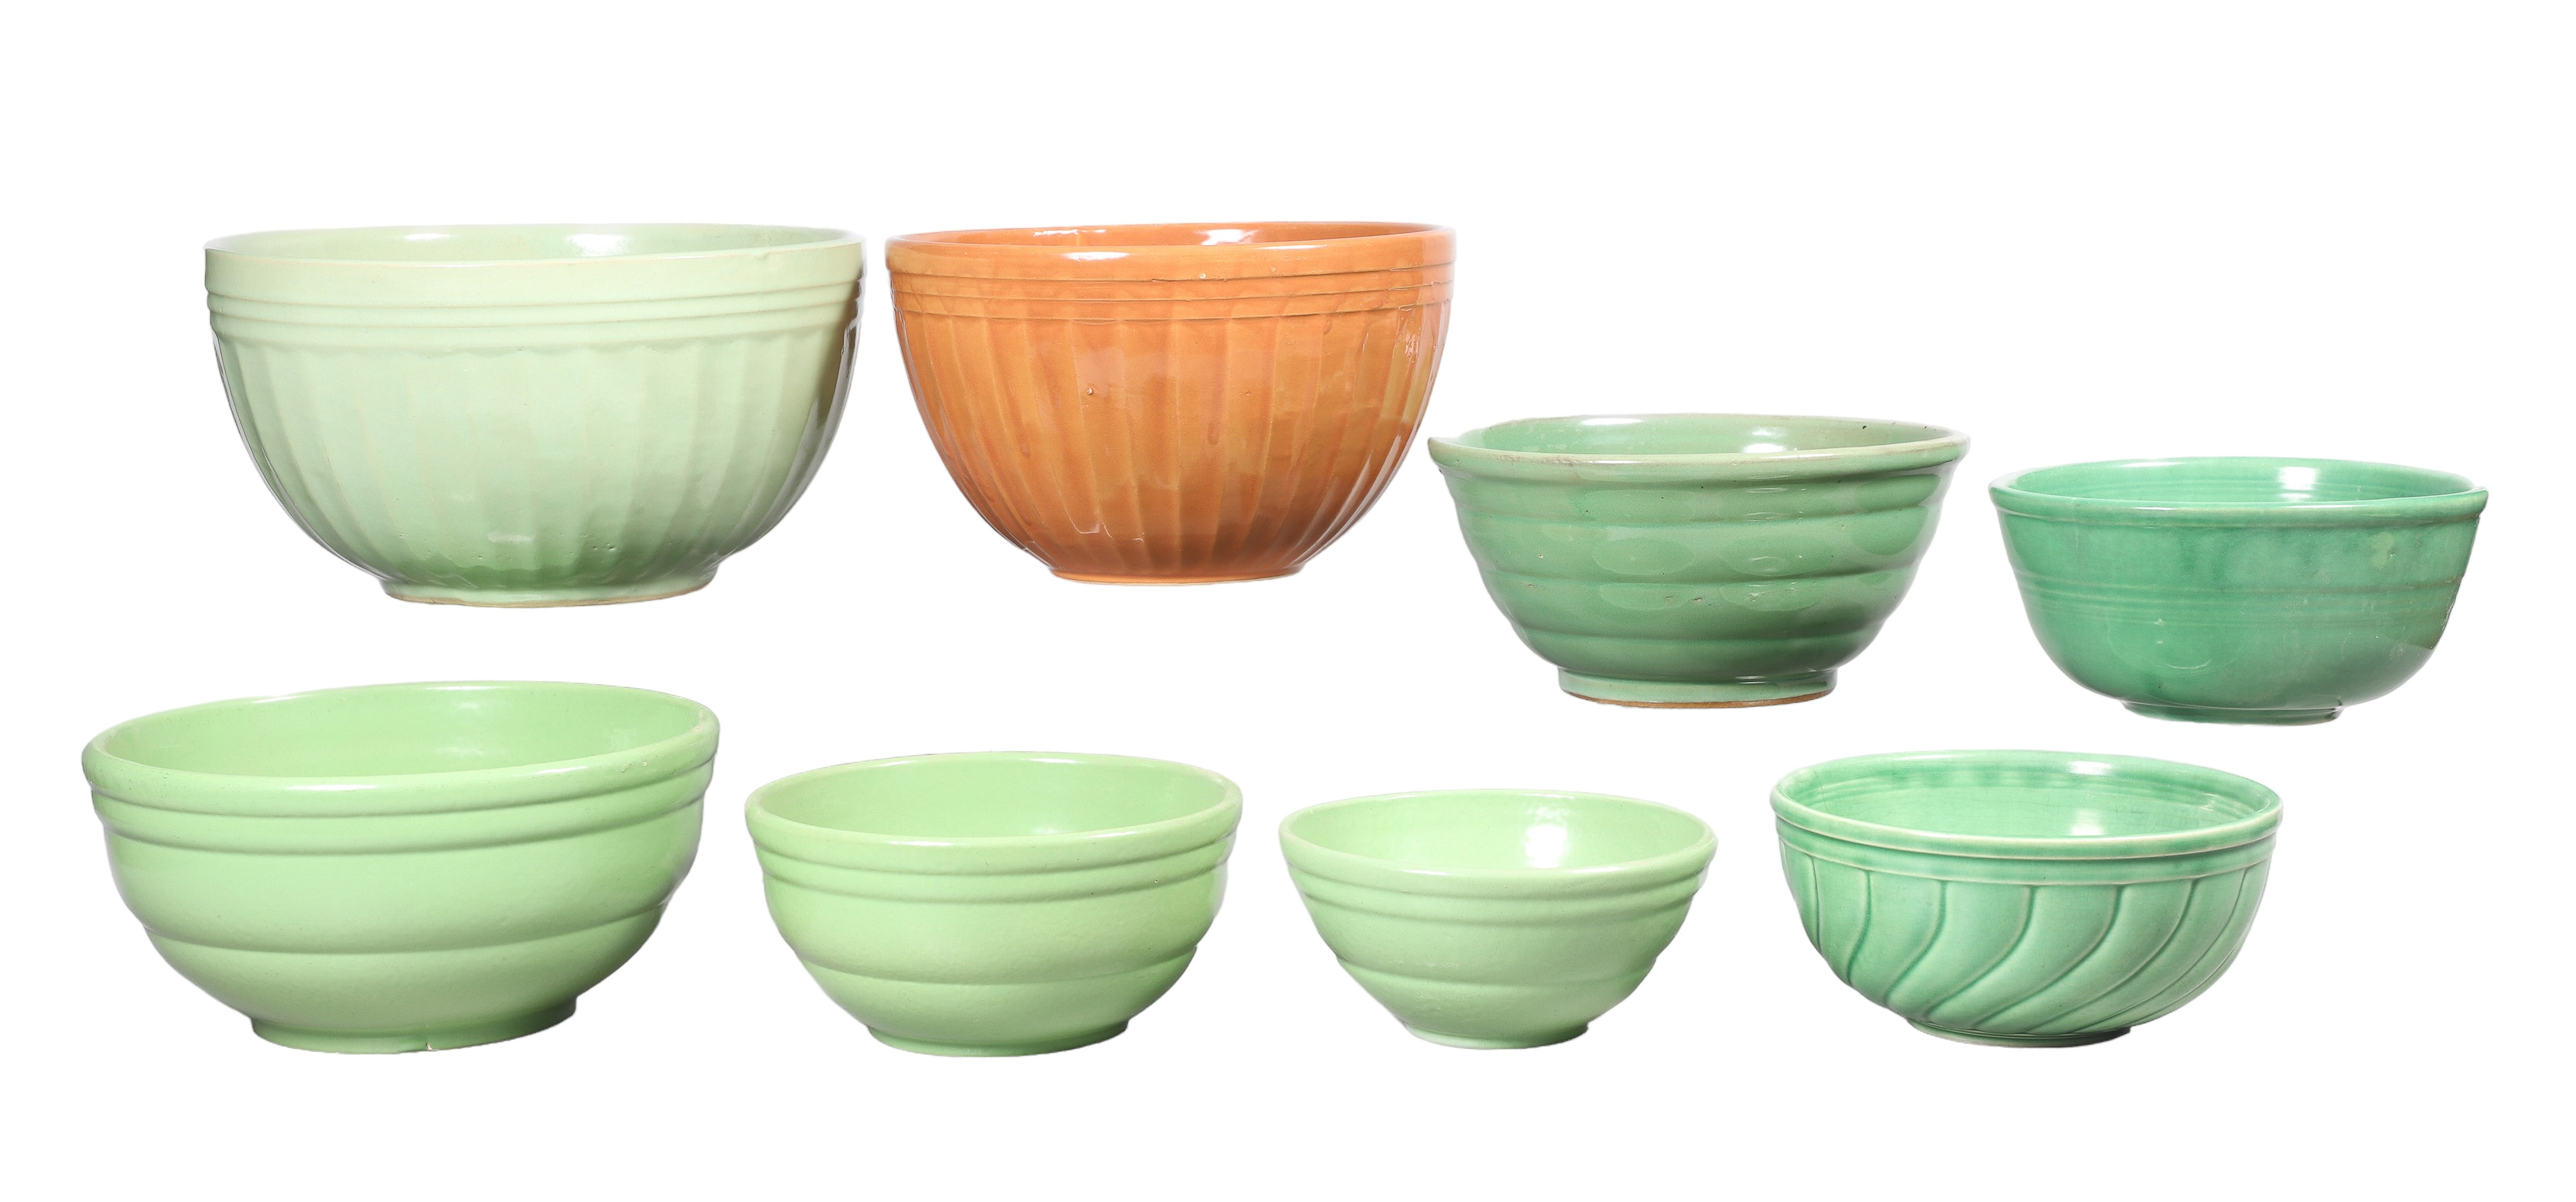  8 Pottery mixing bowls c o 3  2e1aa9